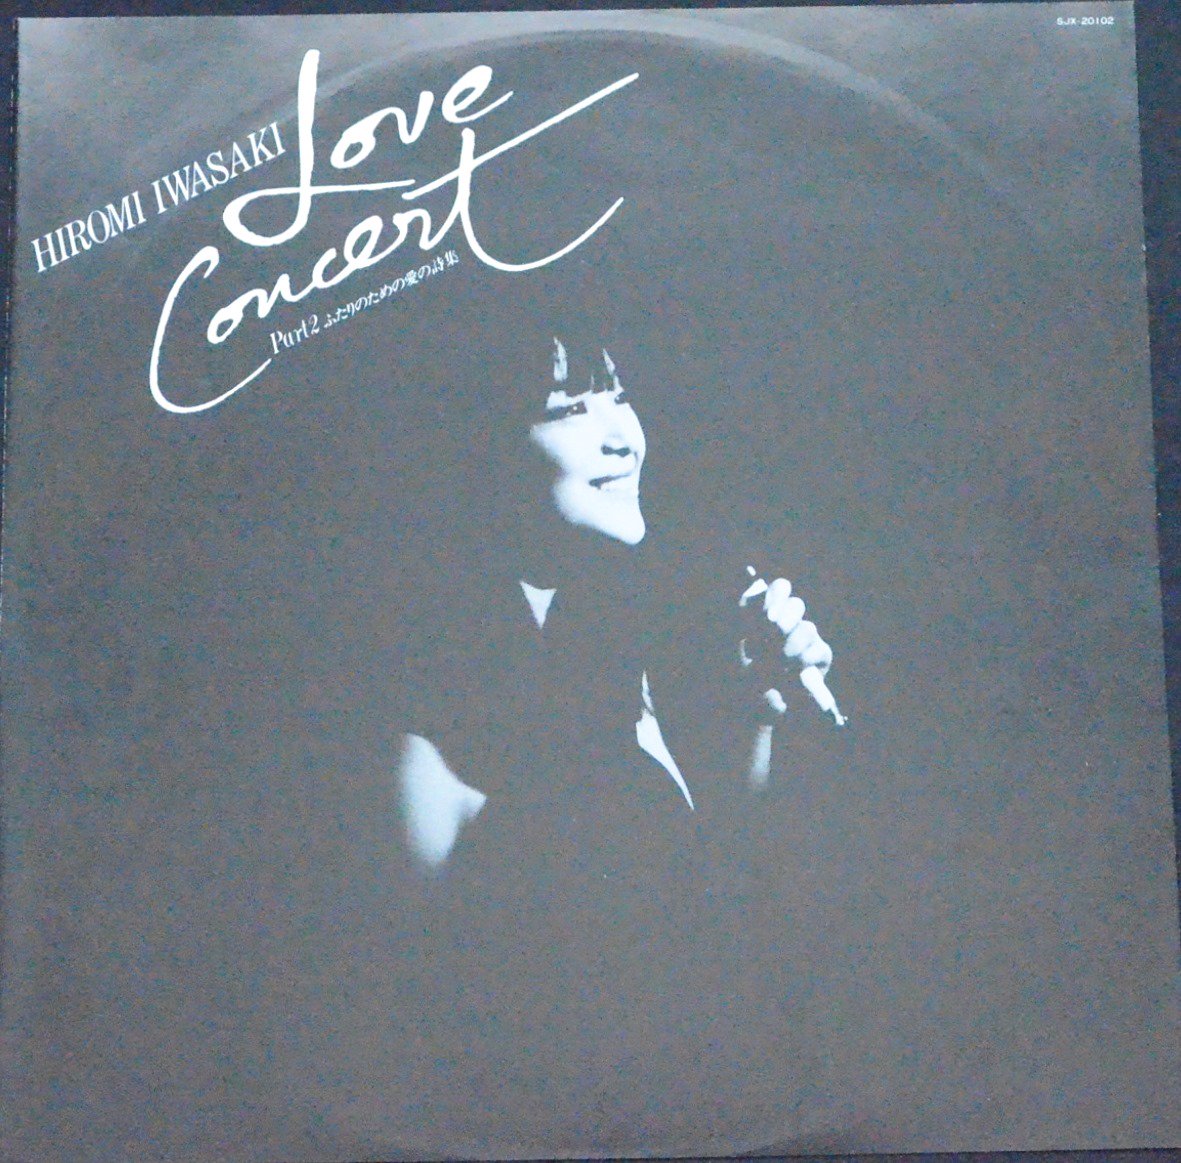 岩崎宏美 HIROMI IWASAKI / ラブ・コンサート - パート2 (ふたりのための愛の詩集) / LOVE CONCERT PART 2  (LP) - HIP TANK RECORDS